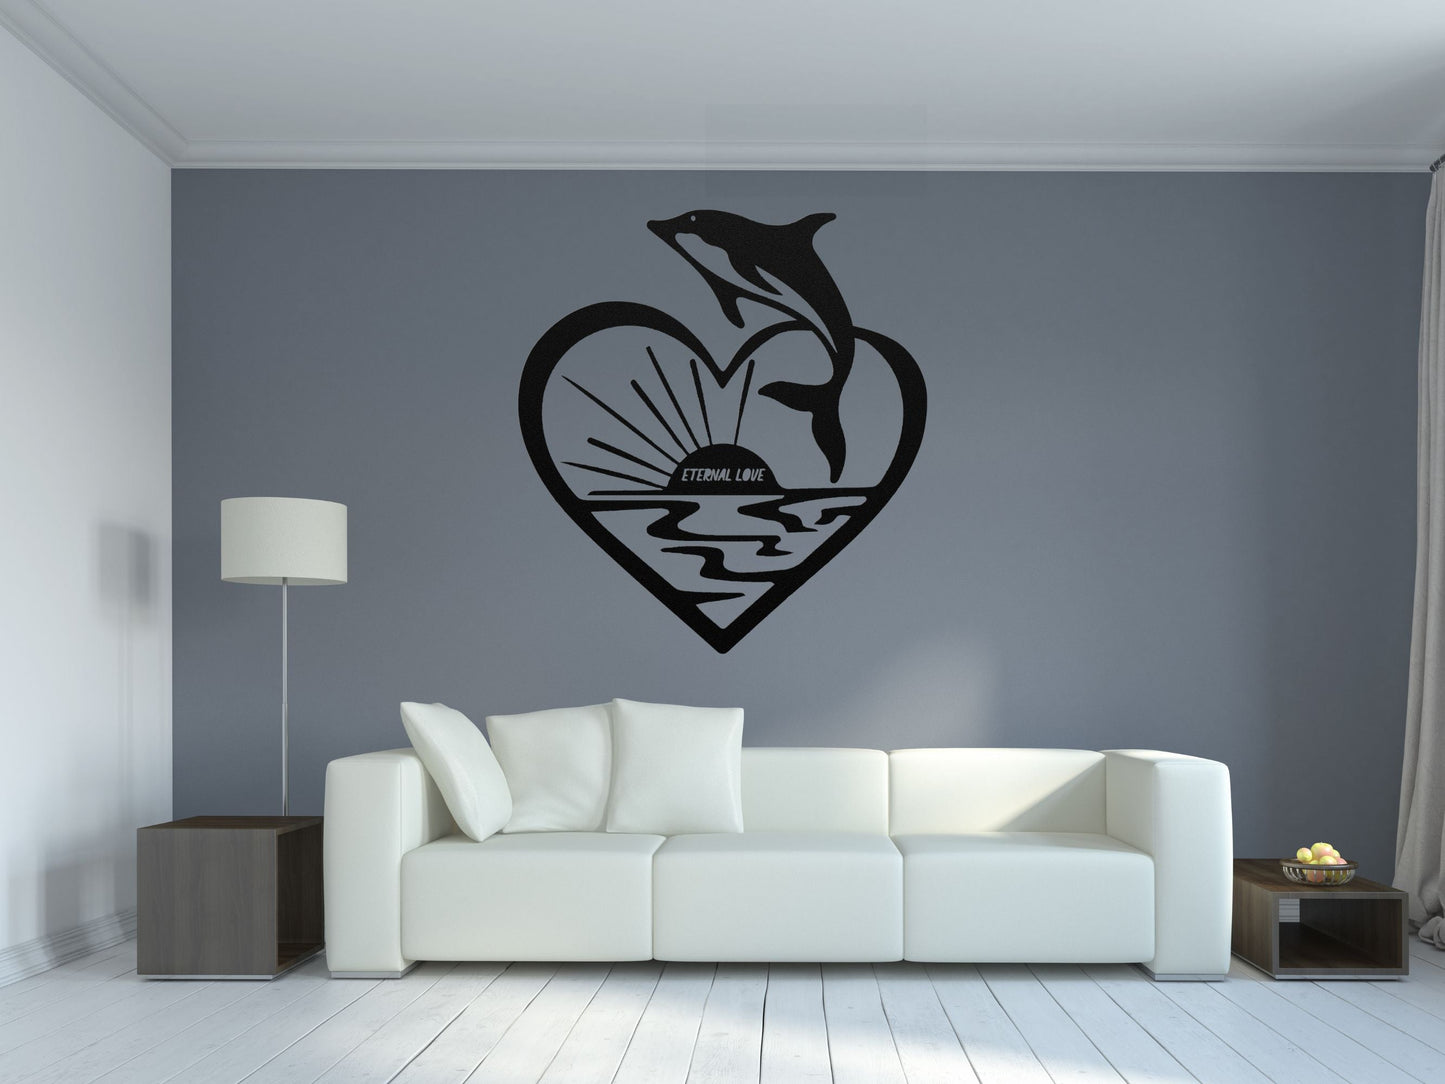 Dolphin Eternal Love Metal Wall Art - Metal Sign Art - Wall Decor Metal Art - Metal Signs For Home